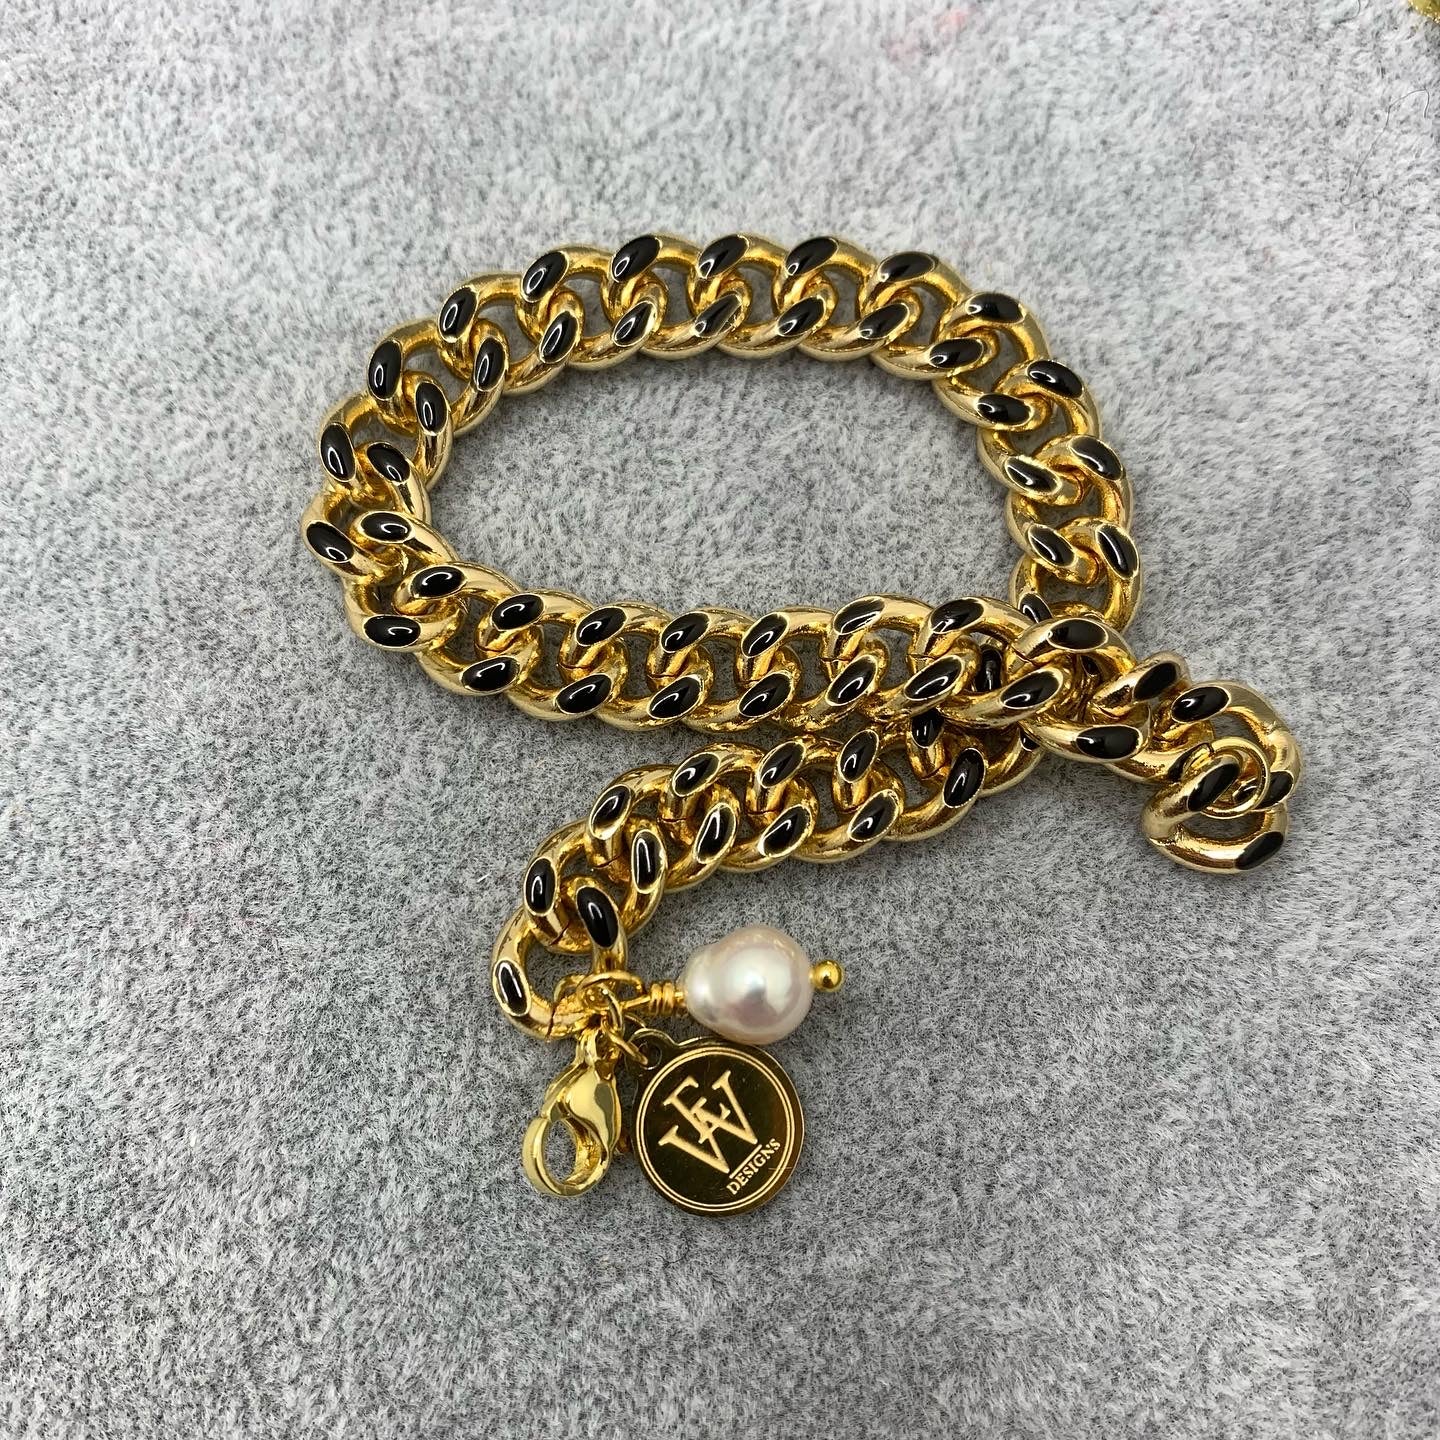 14k Gold Plated Brass Chain Embellished with Black Enamel Bracelet